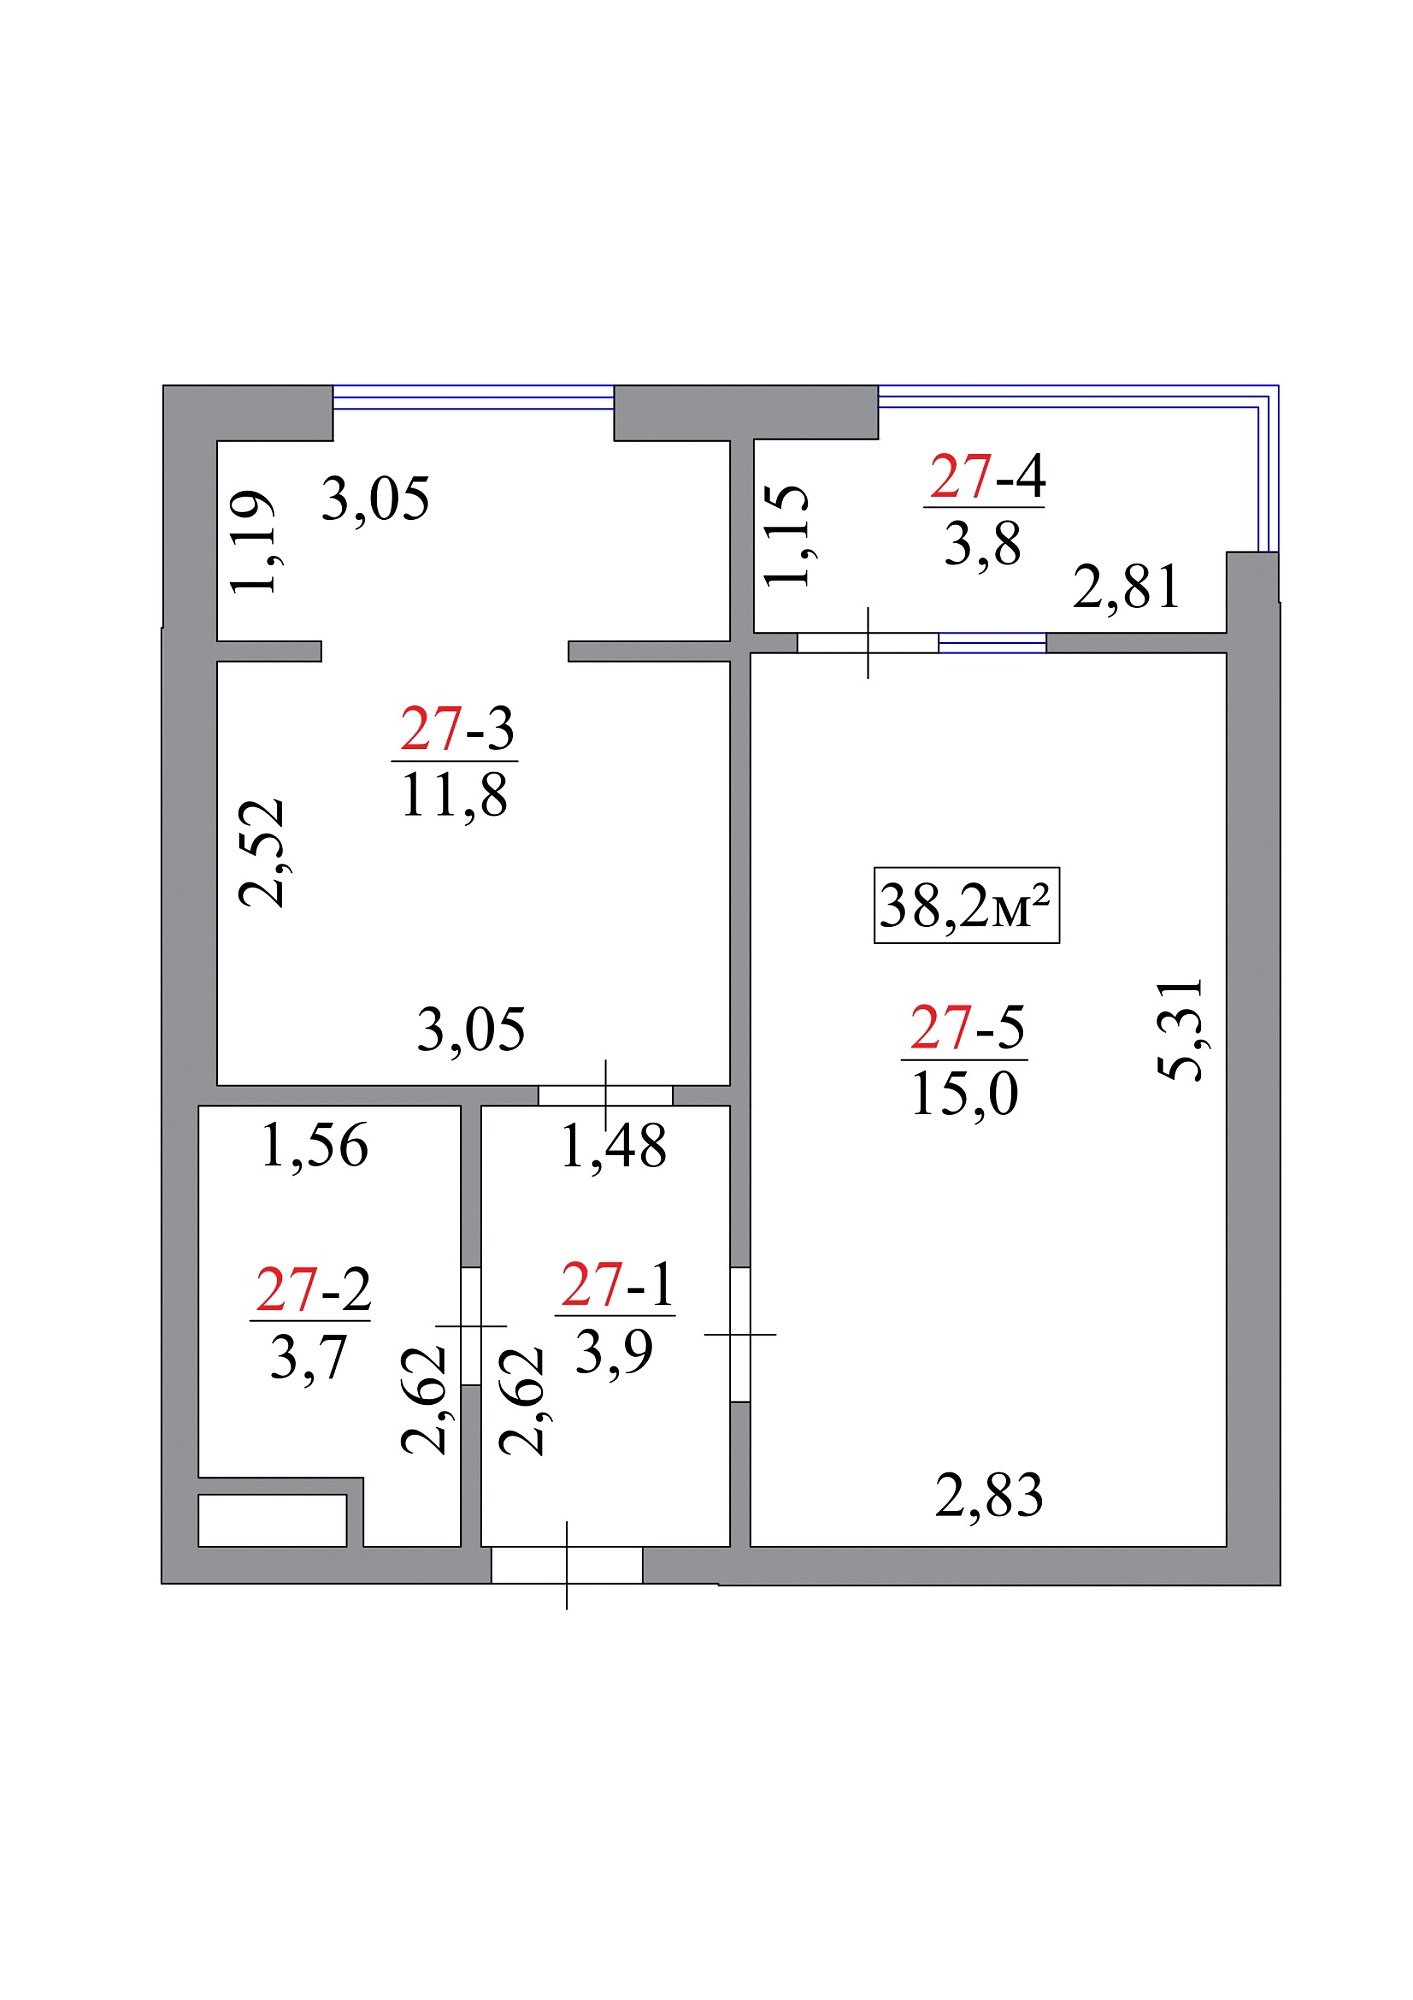 Планировка 1-к квартира площей 38.2м2, AB-07-03/0025а.